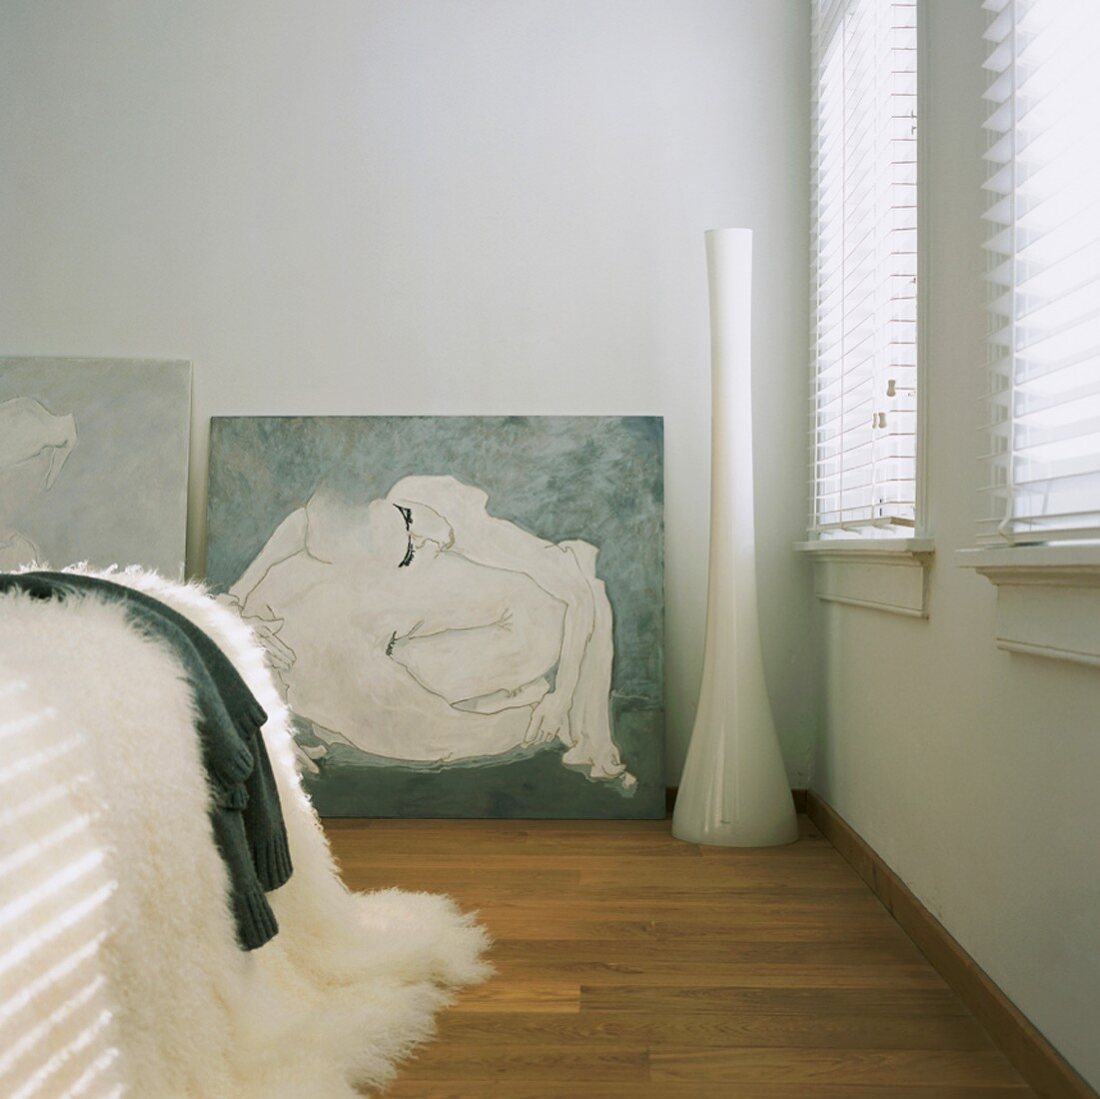 Weisser Schlafraum mit plüschiger Decke auf dem Bett, geschlossenen Jalousien und Akt-Malerei im Hintergrund